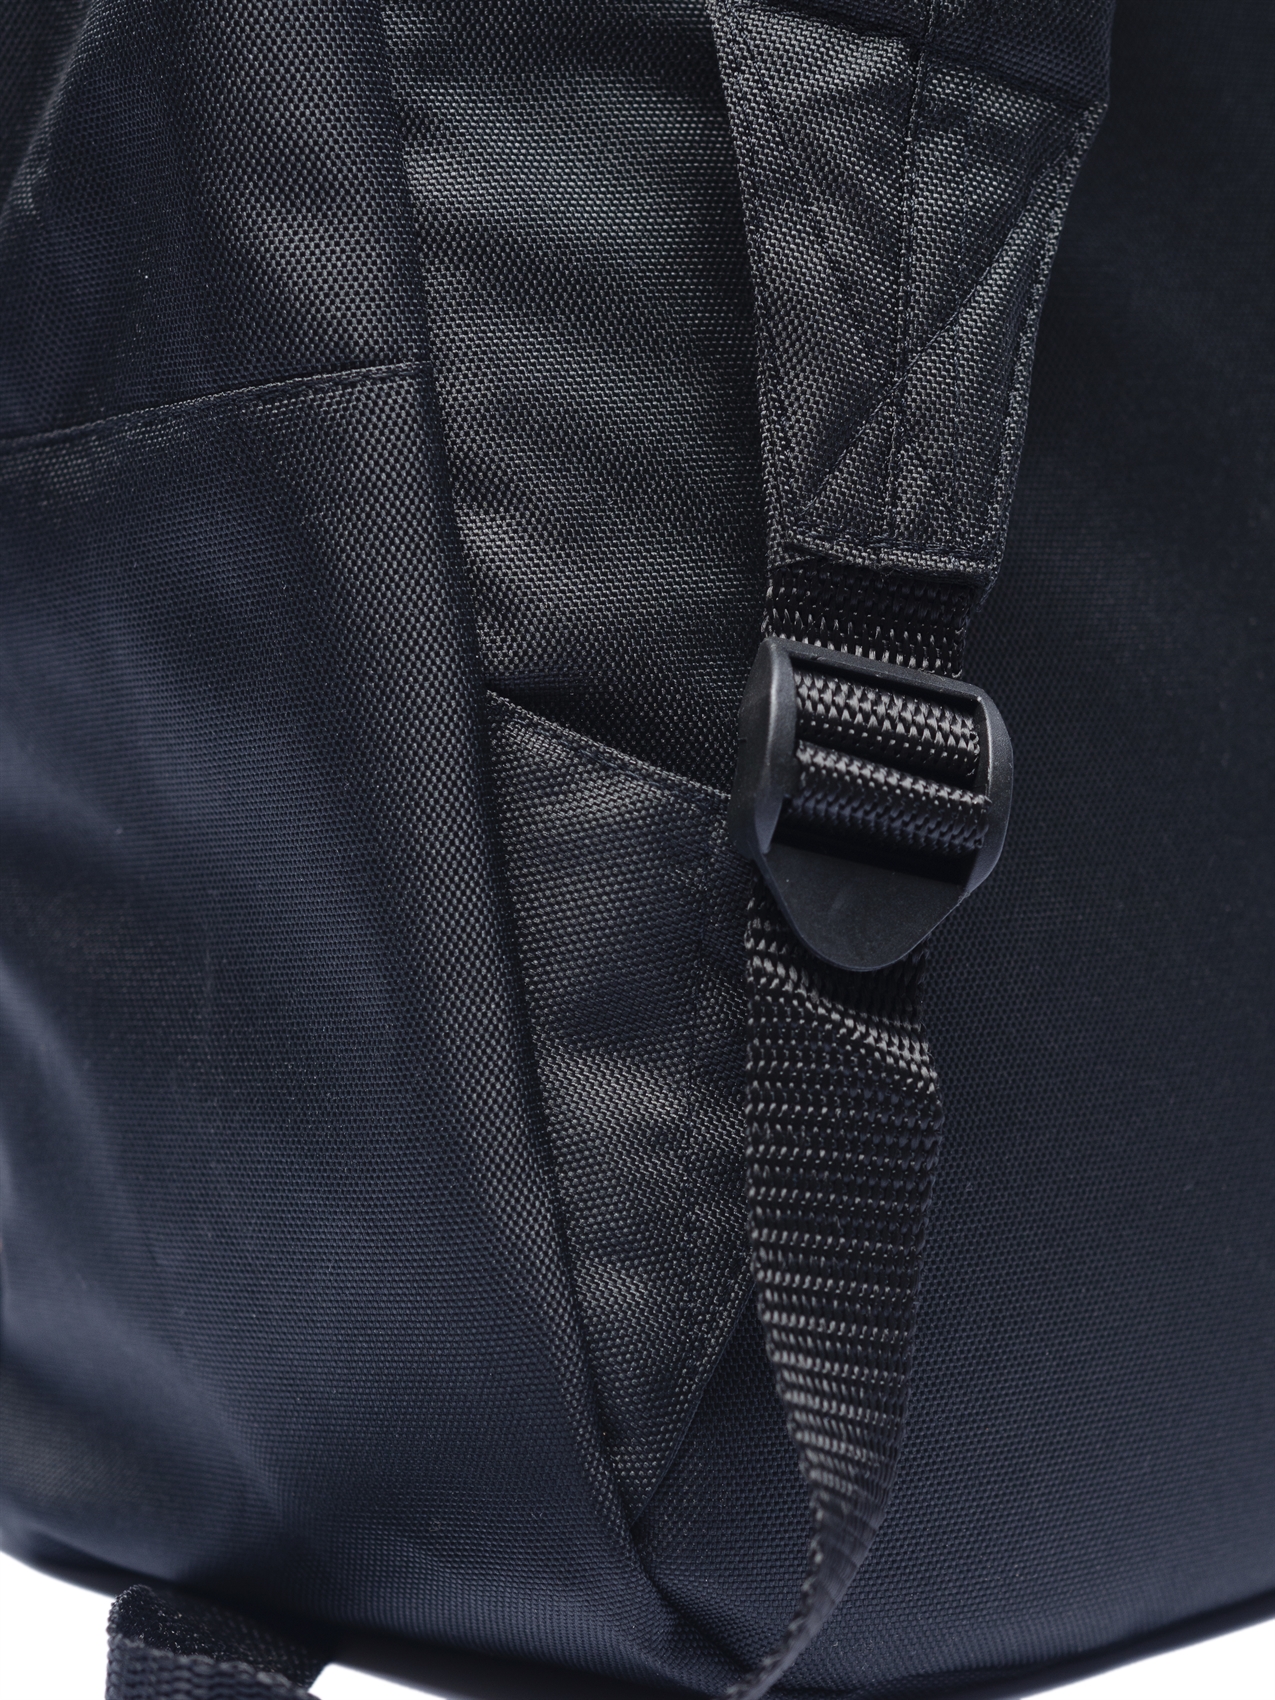 Рюкзак Oldy принт карман (черный, огненный череп) - фото 37806